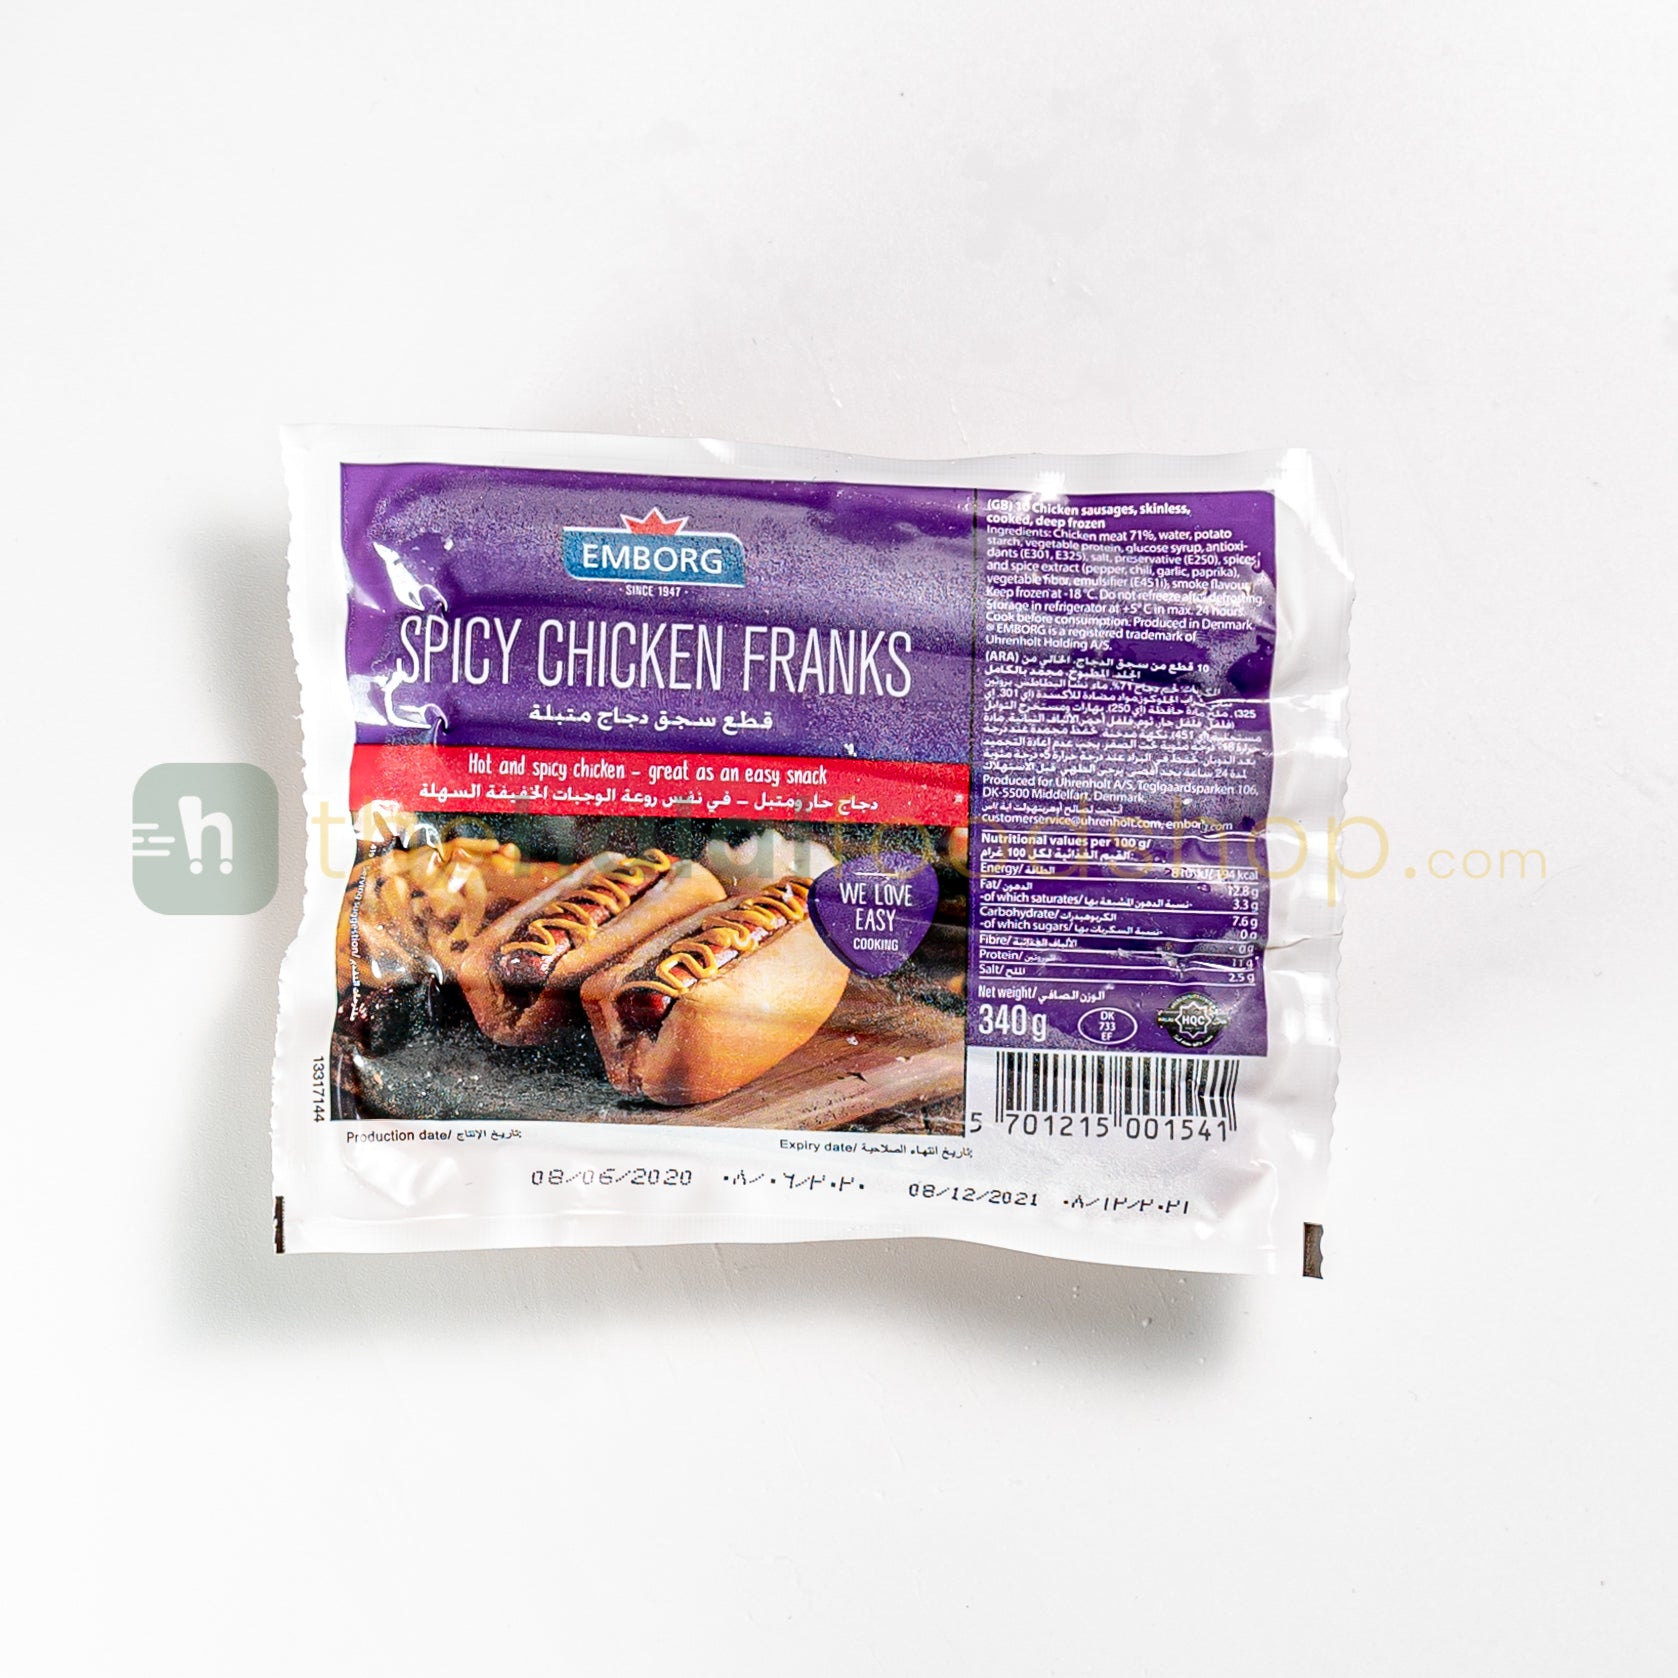 Emborg Spicy Chicken Franks 10pc (340g)